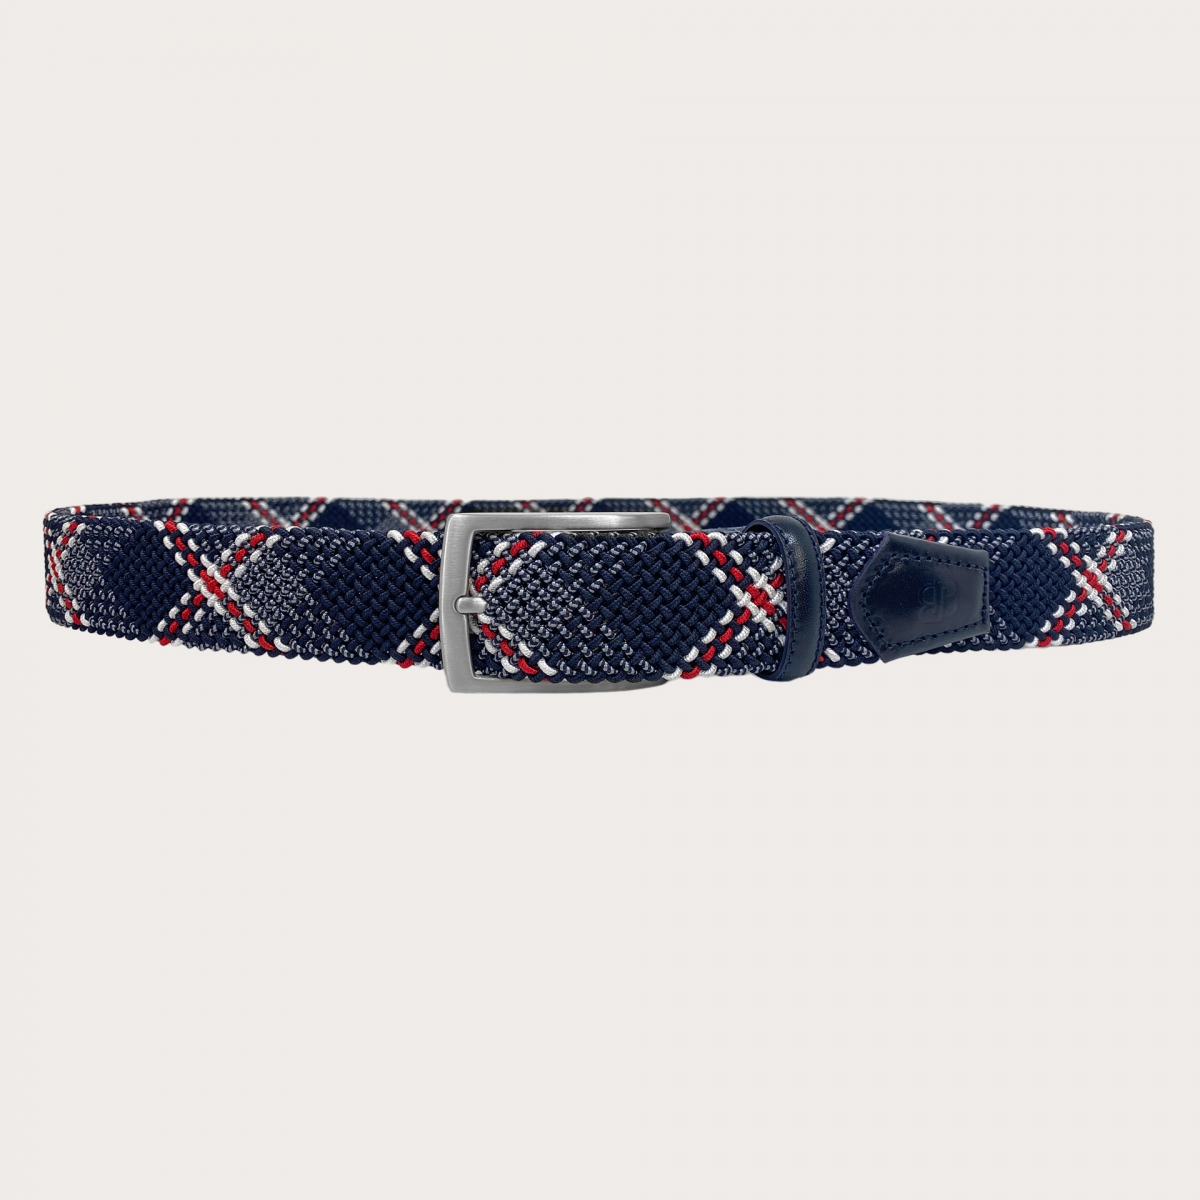 BRUCLE Cinturón elástico tubular trenzado azul con patrón rojo y blanco